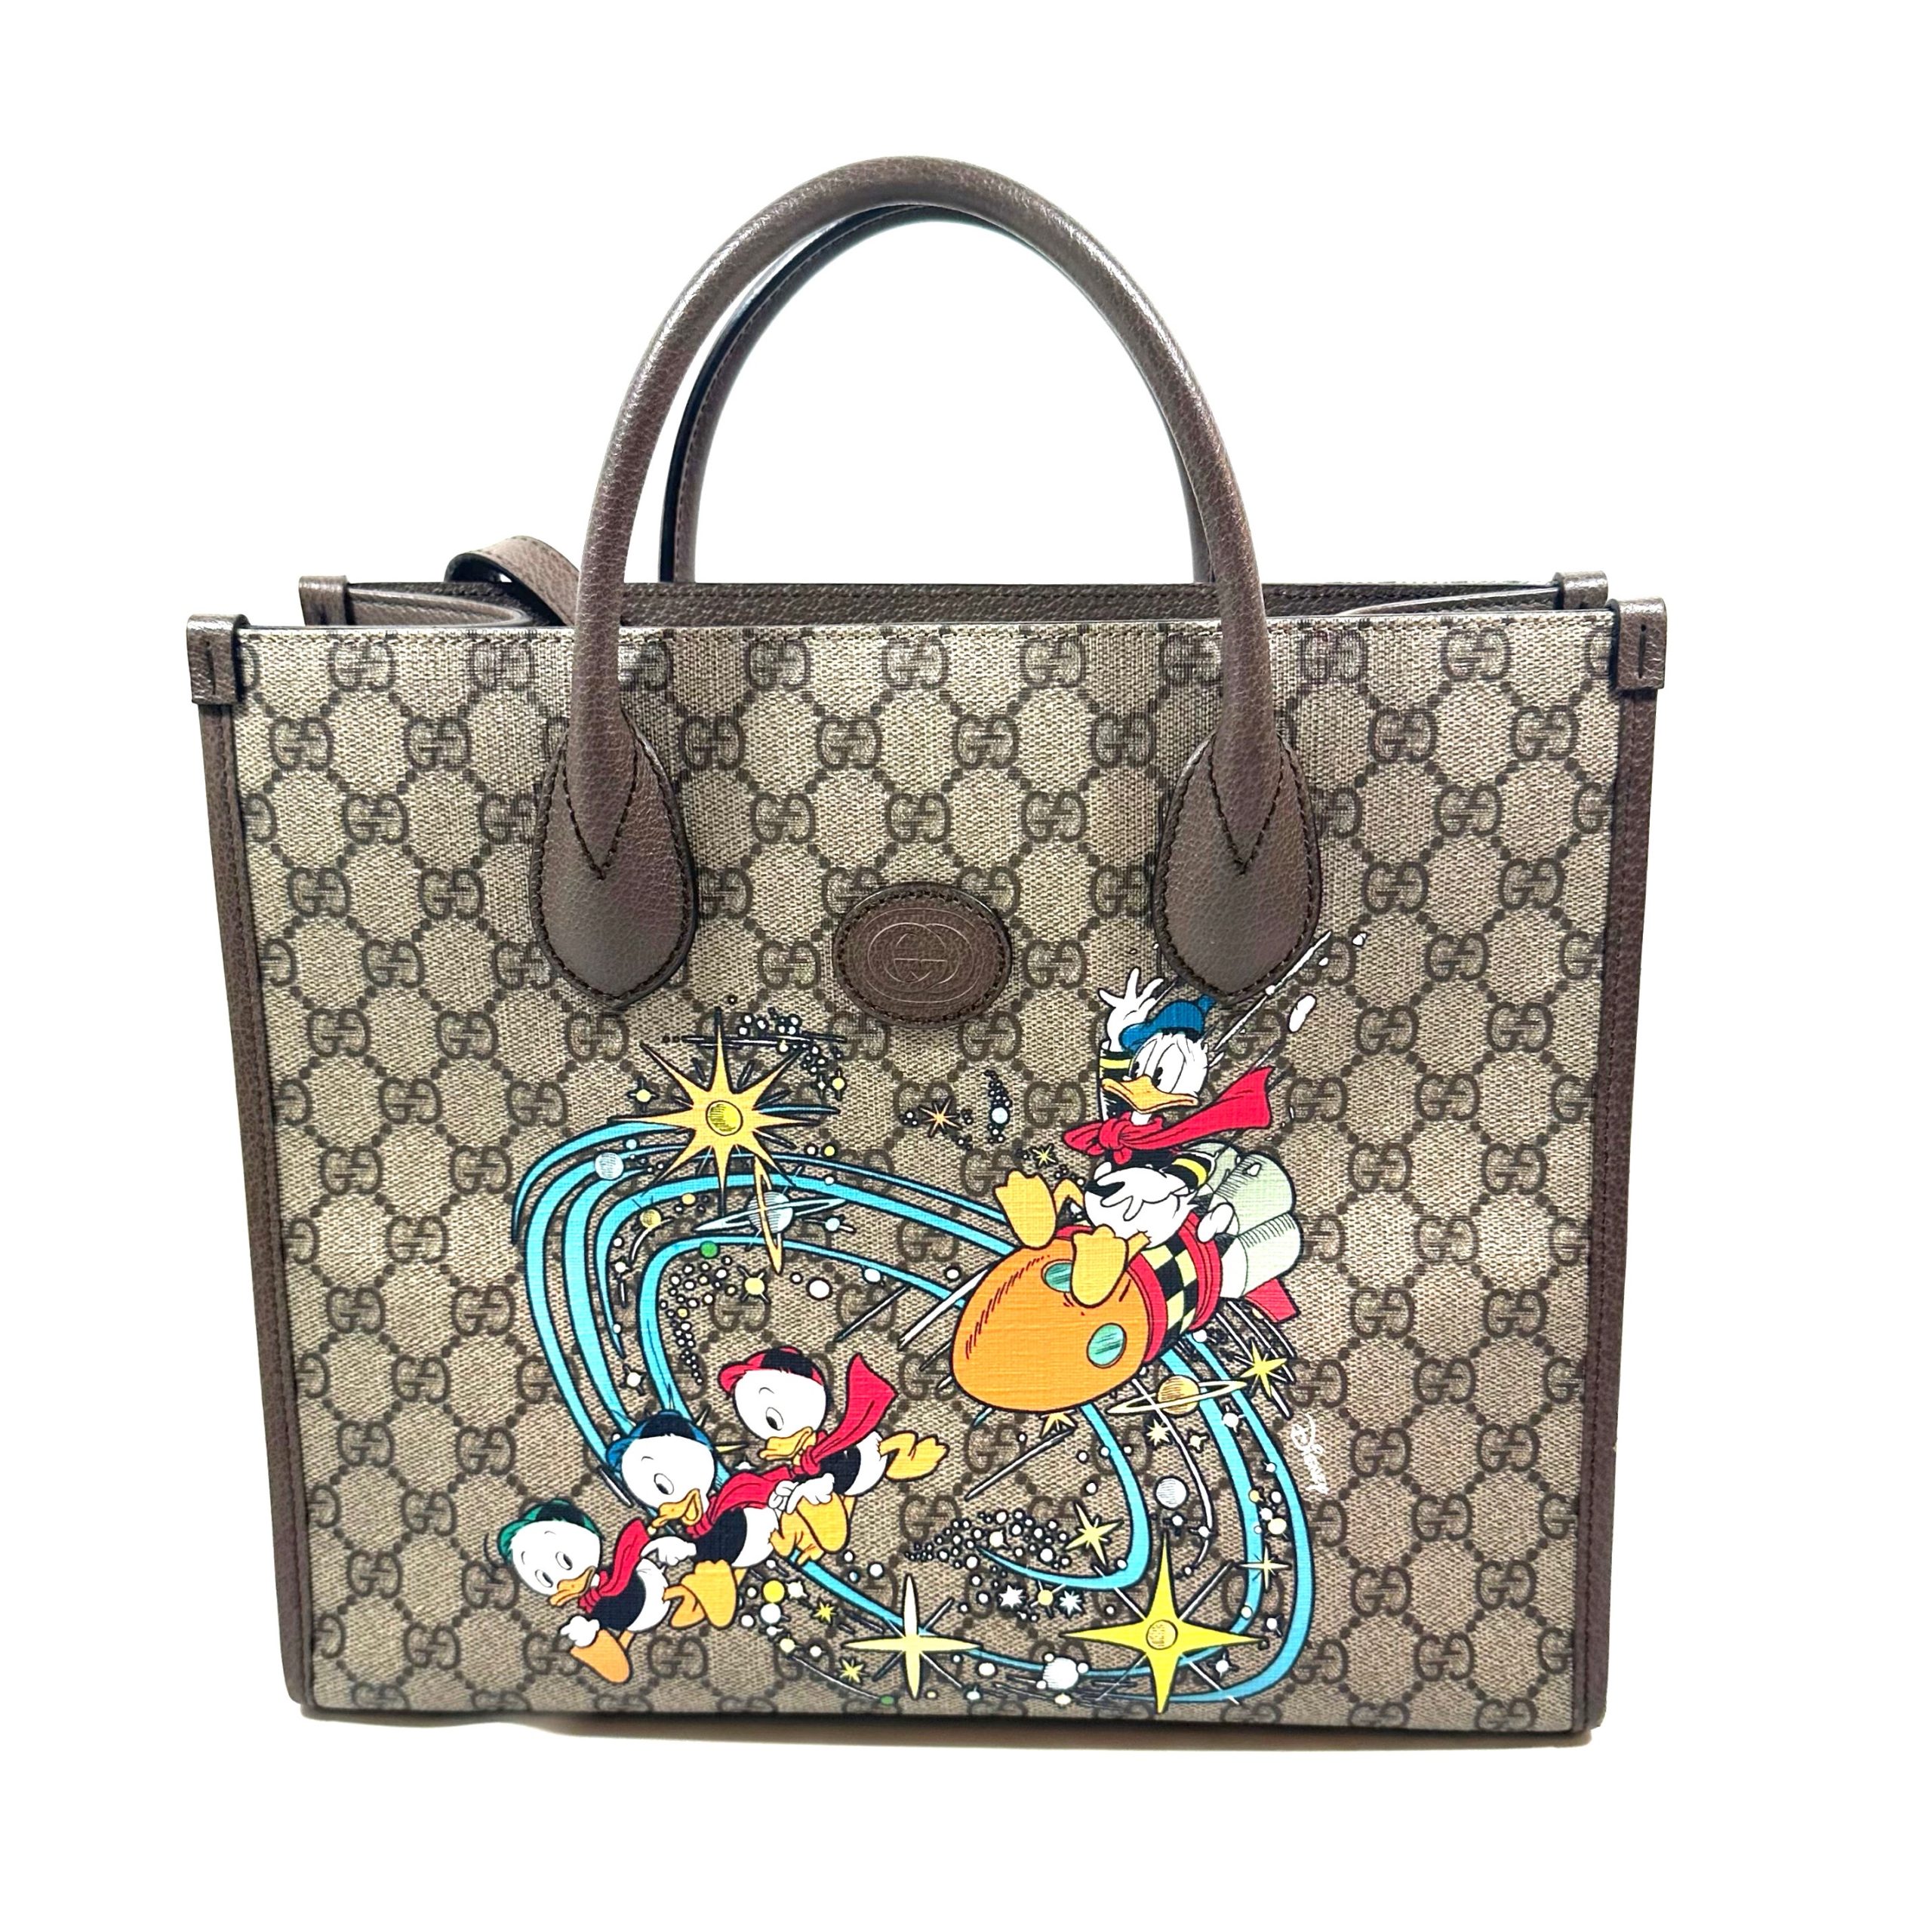 Gucci x Disney Brown and Ebony Supreme GG Donald Duck Tote Bag